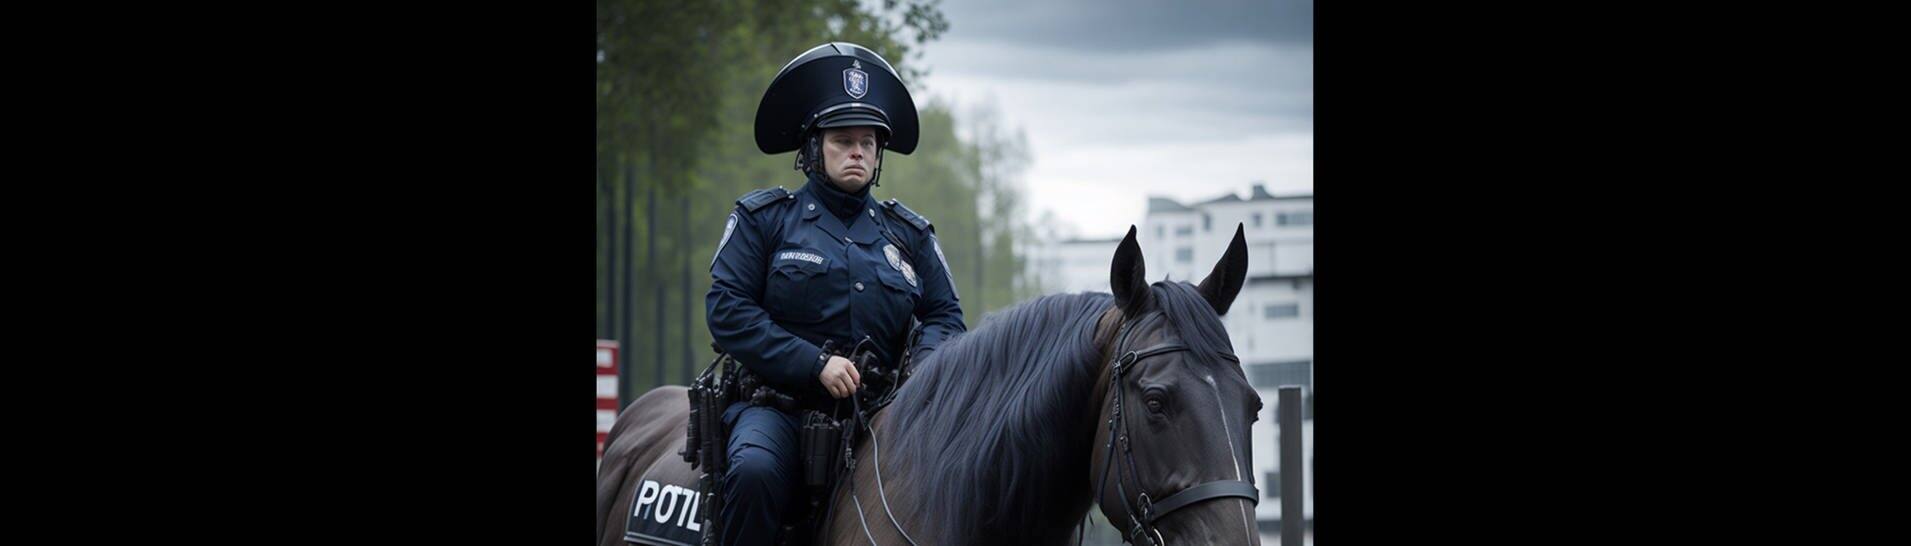 Ein KI-generiertes Bild einer Polizistin auf einem Pferd mit zu kurzen, dafür aber fünf Beinen